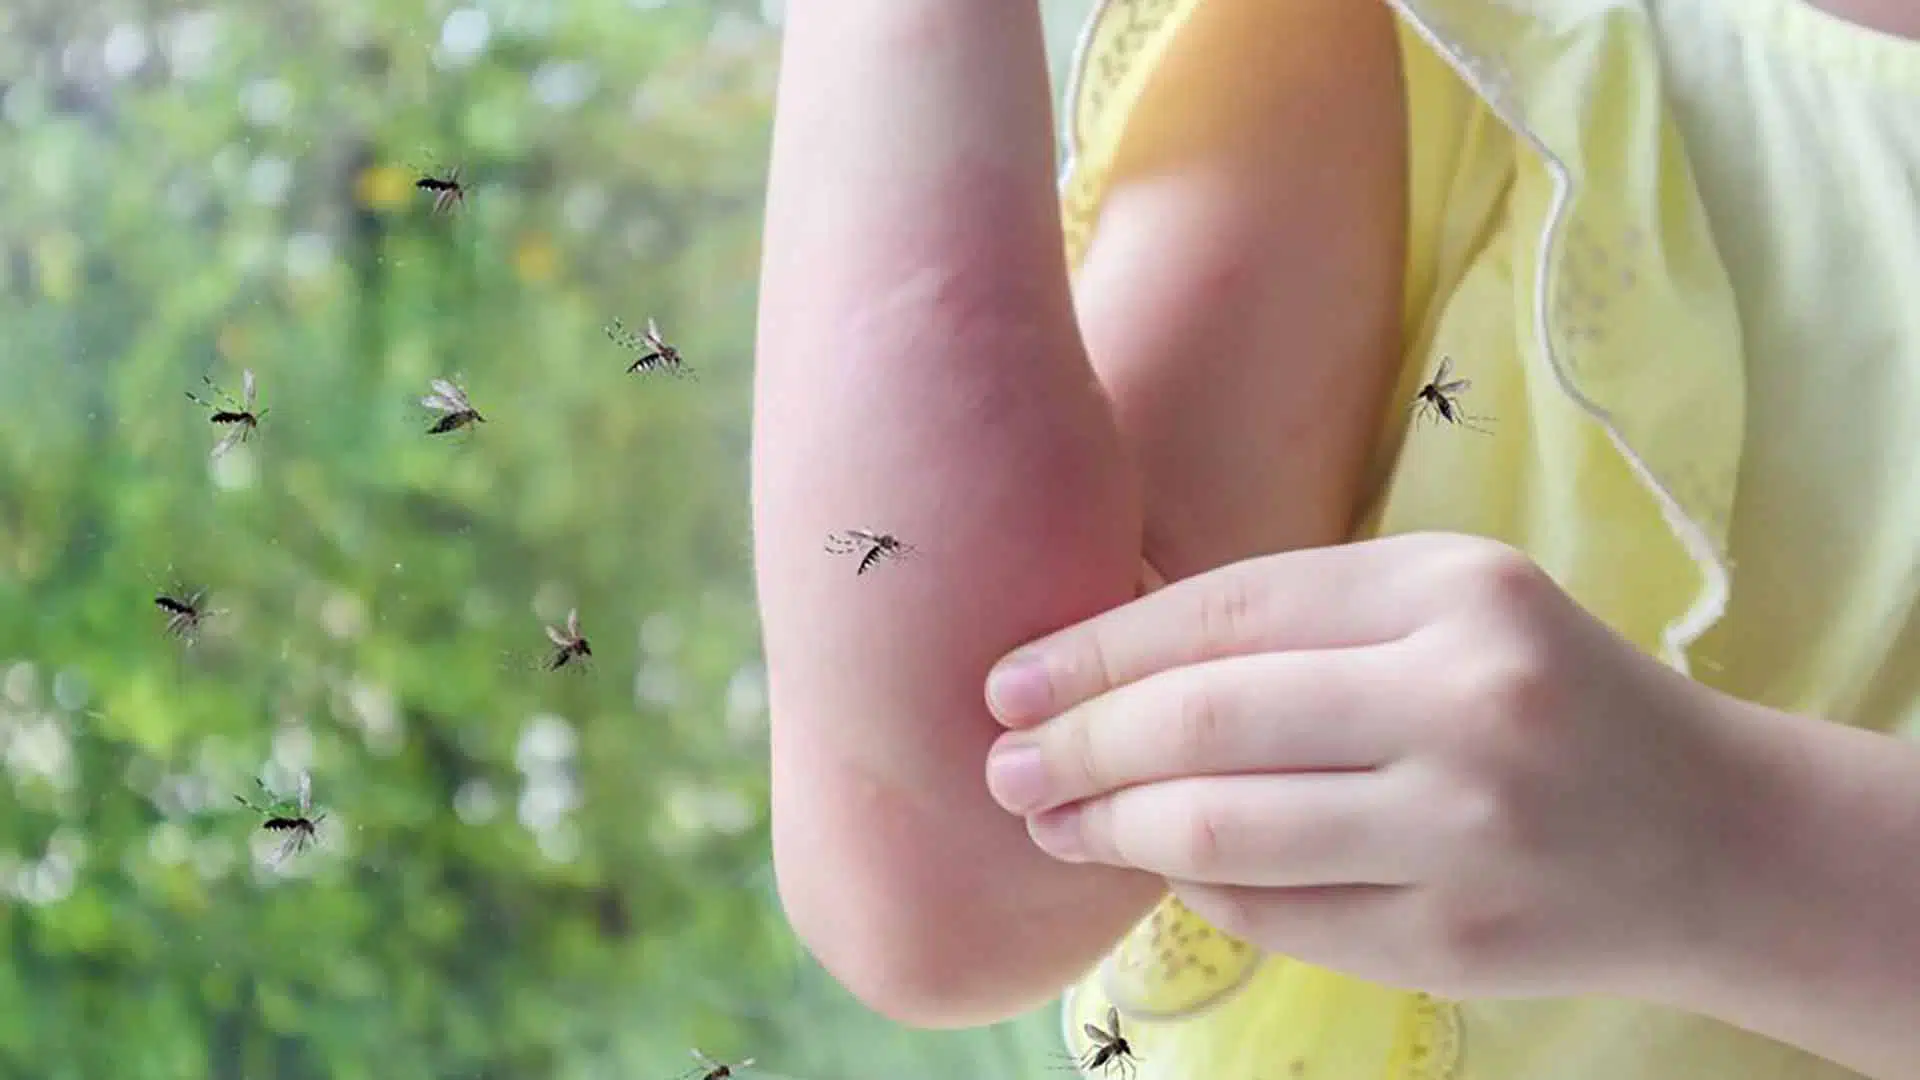 Invasión mosquitos